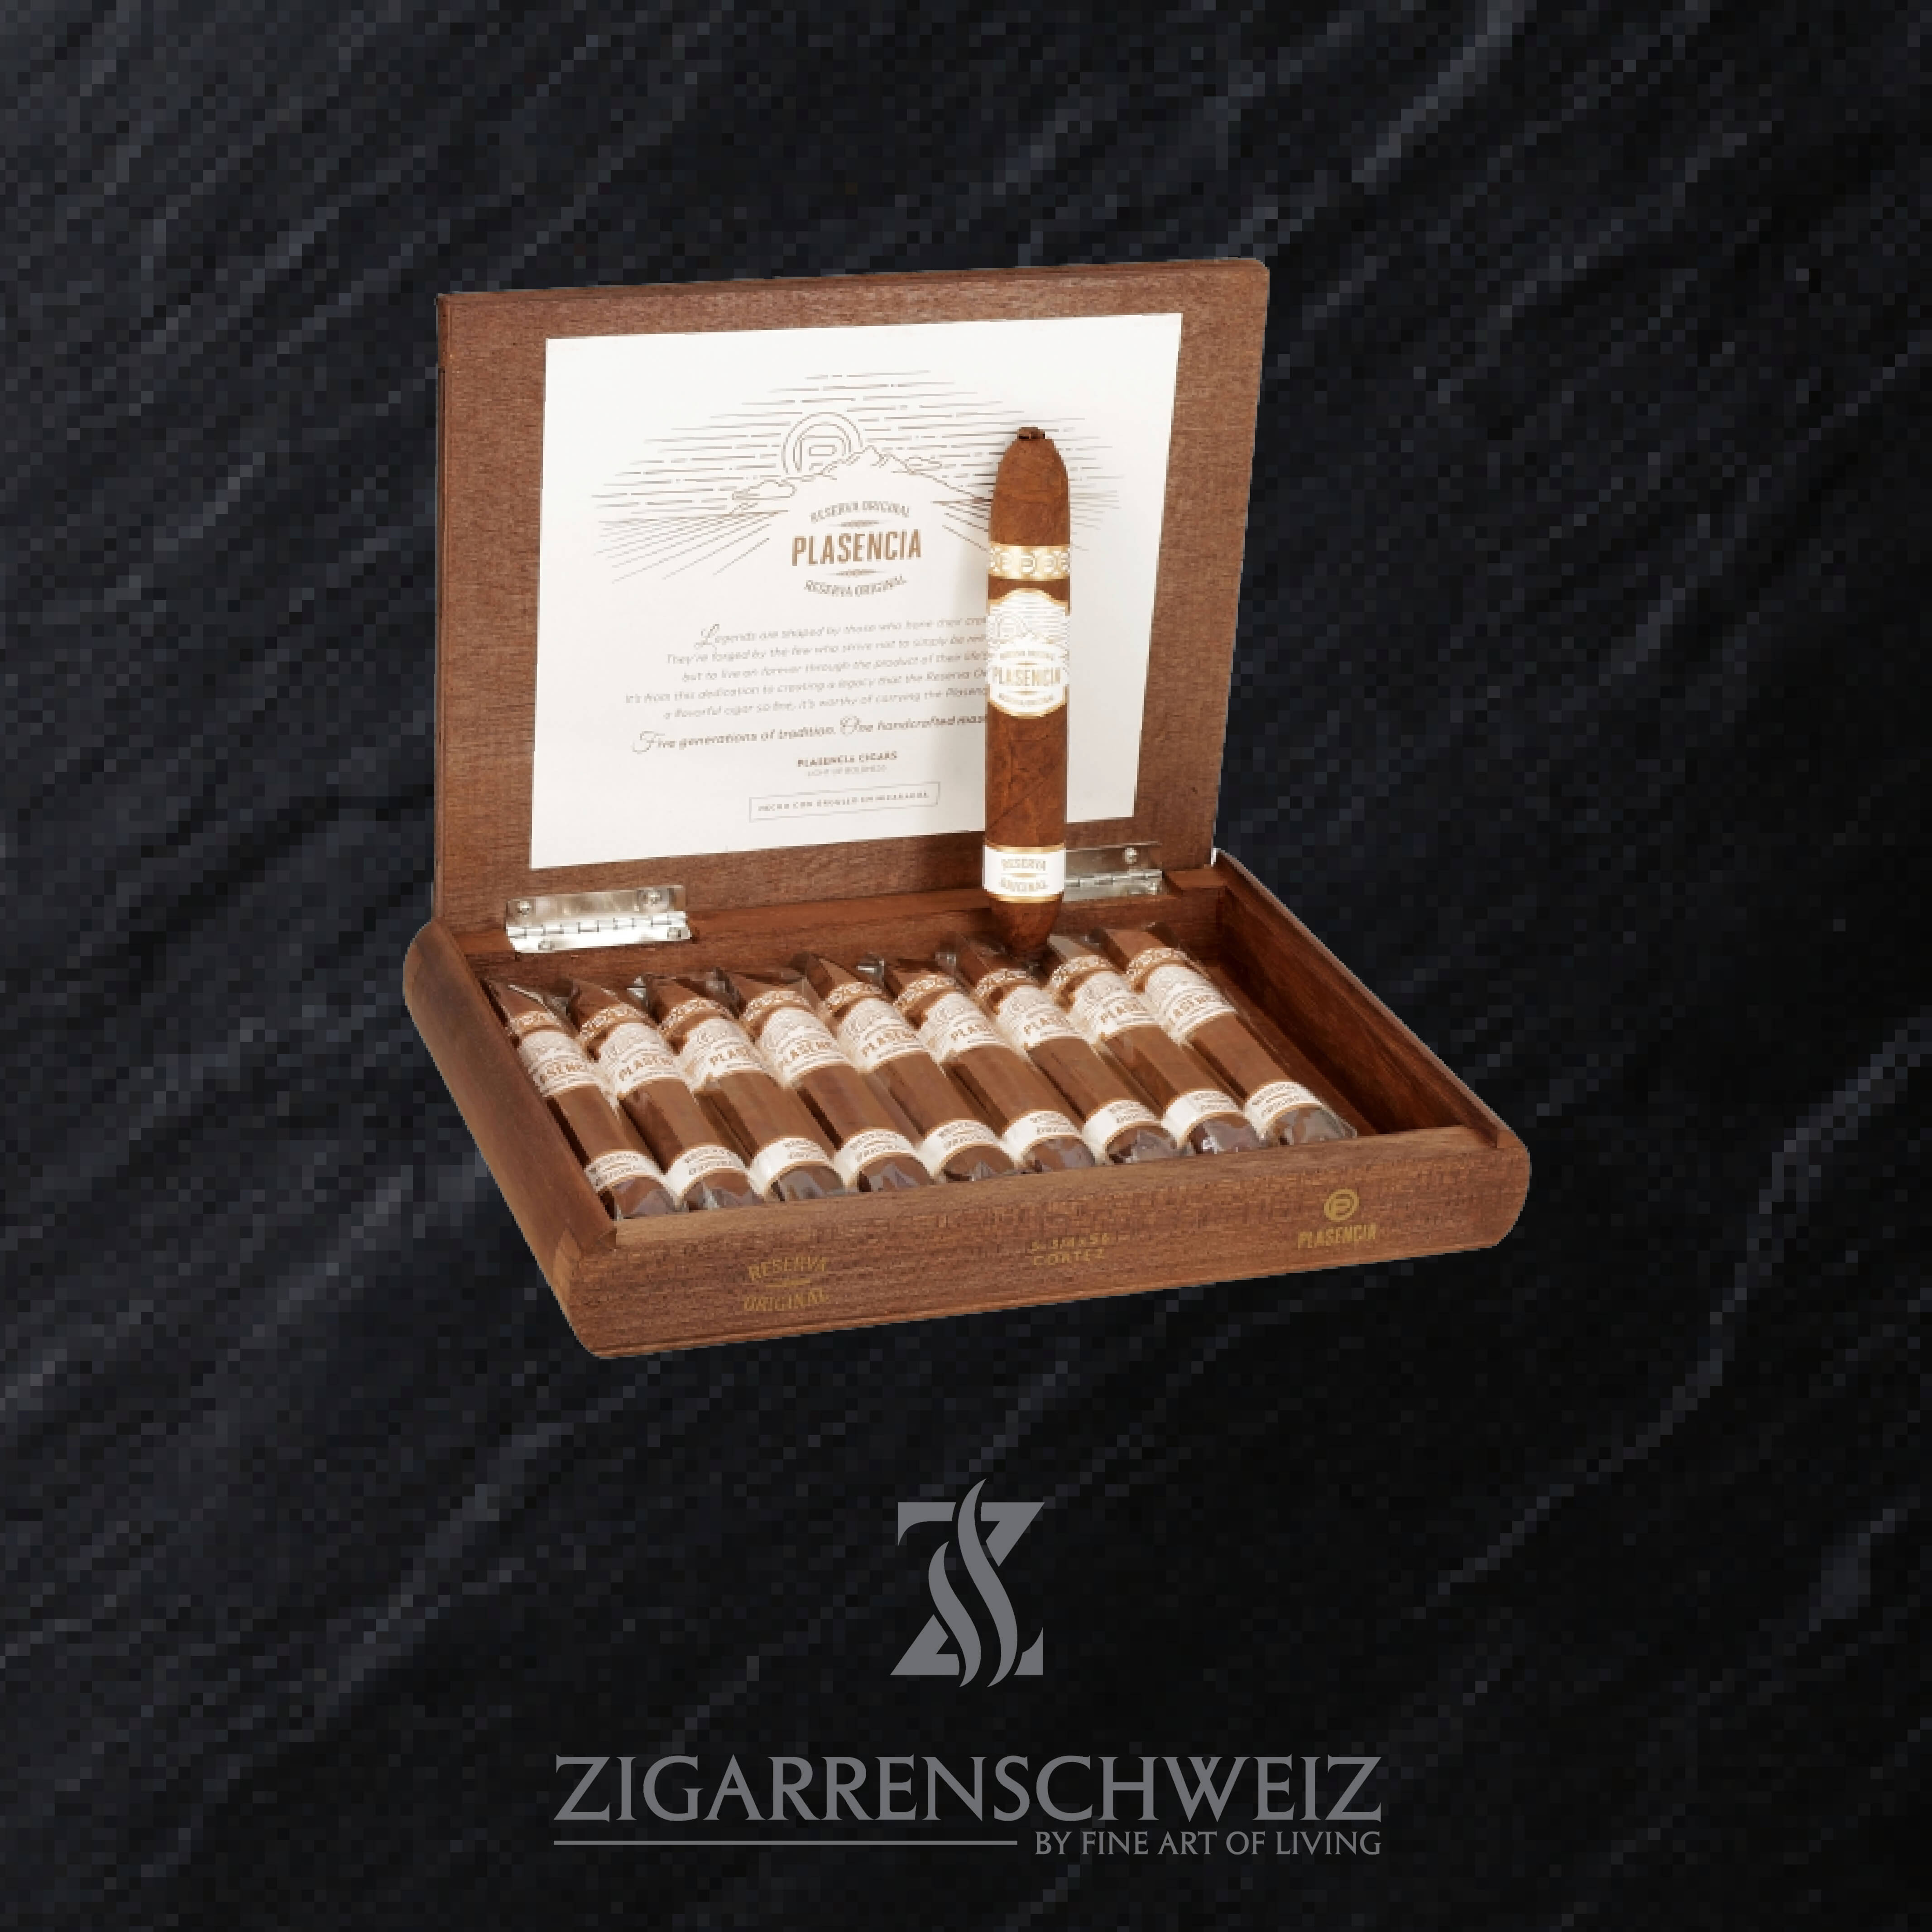 offene Kiste Plasencia Reserva Original Cortes Zigarren im Figurado Format